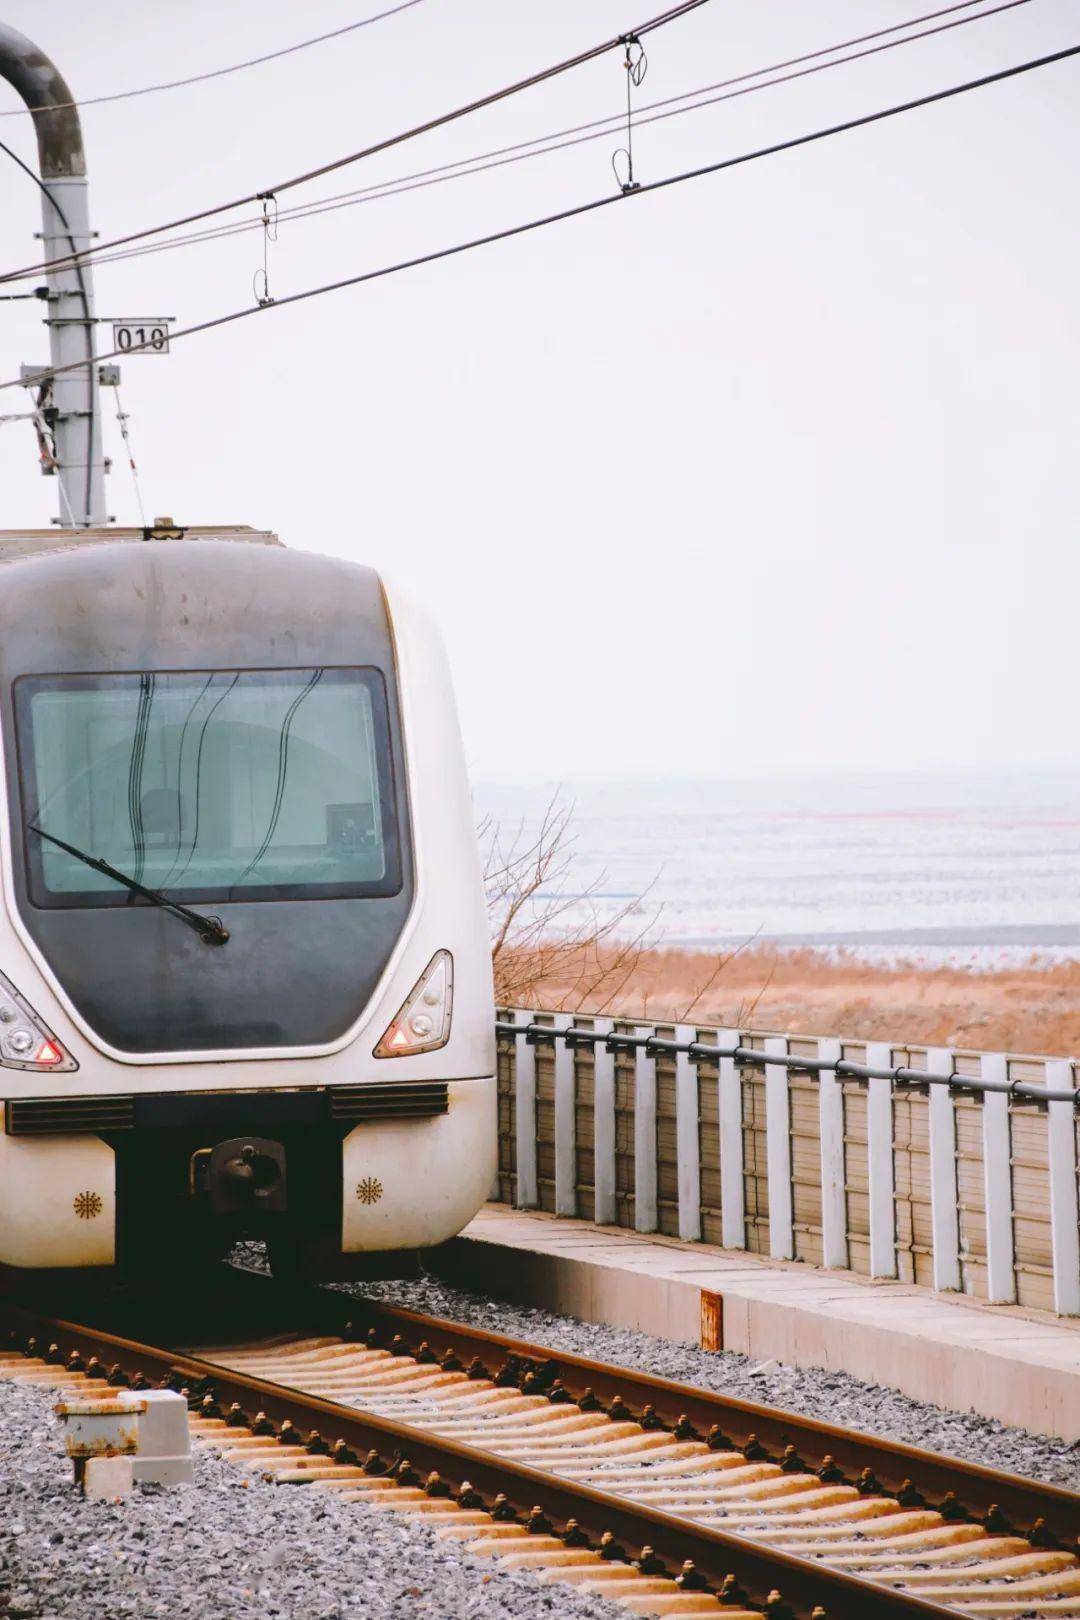 晨星在通往旅顺的轻轨12号线上,有一个可以看海的地铁站——塔河湾站 